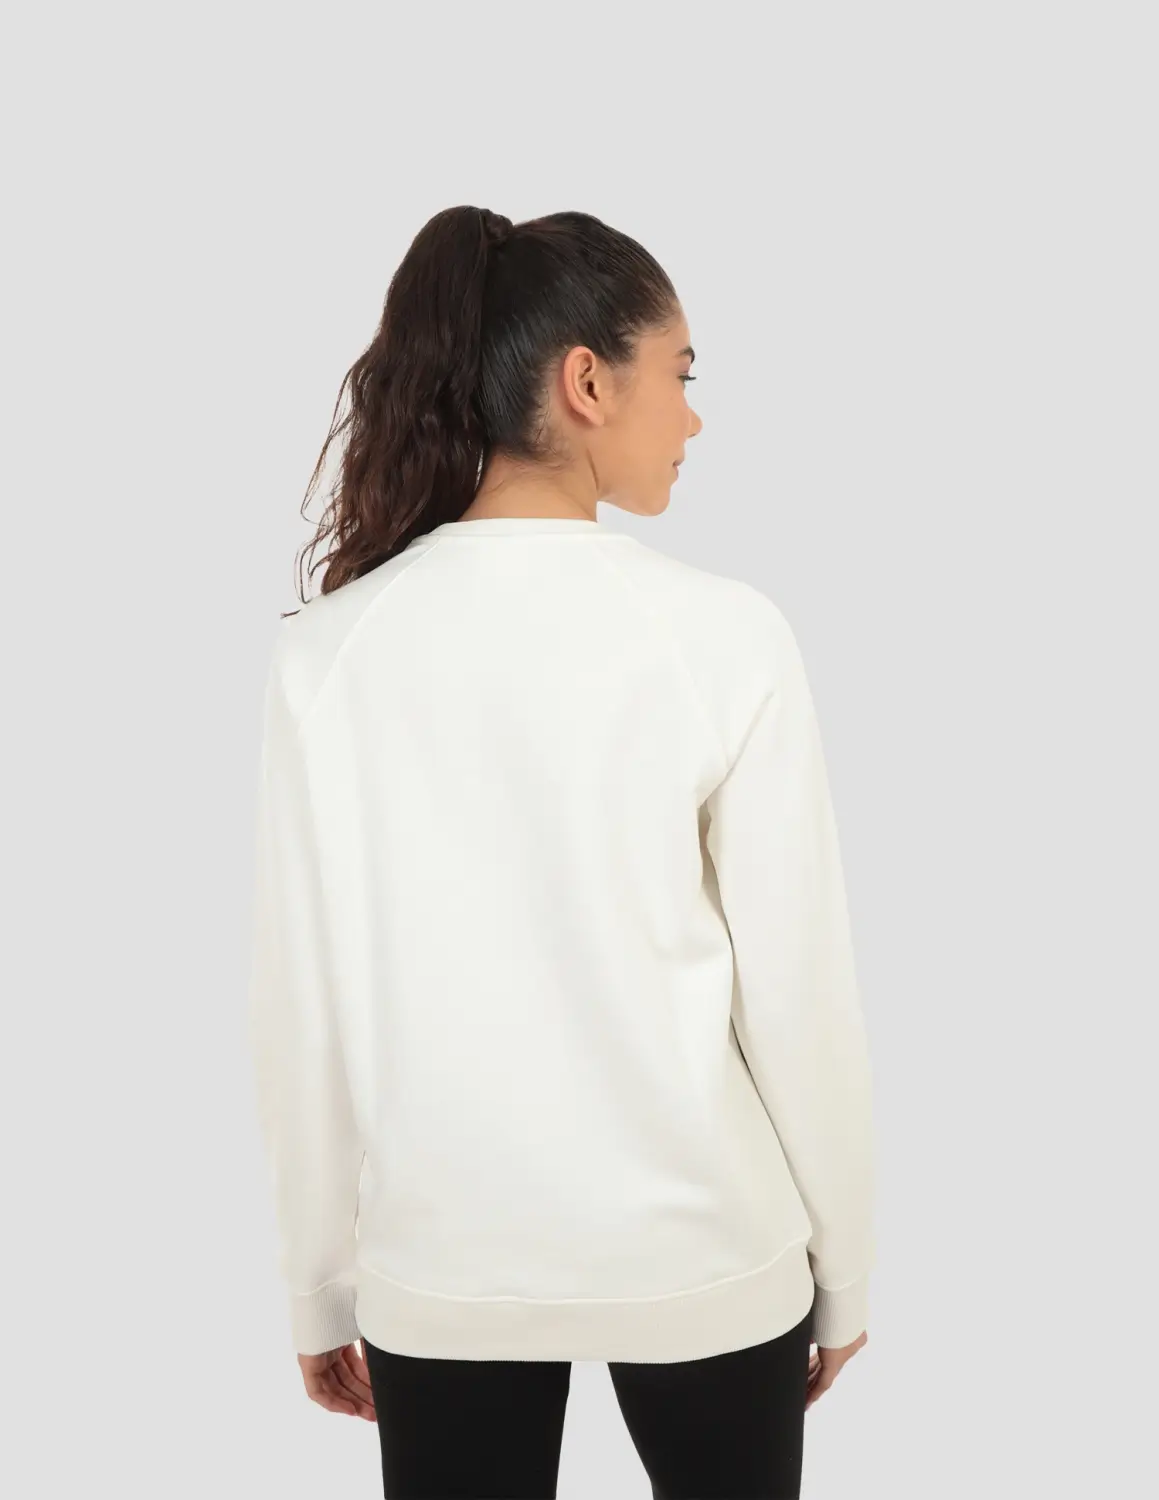 DIADORA  Sweatshirt Crew Iconic Kırık Beyaz Kadın Sweatshirt - 502.173624-20007